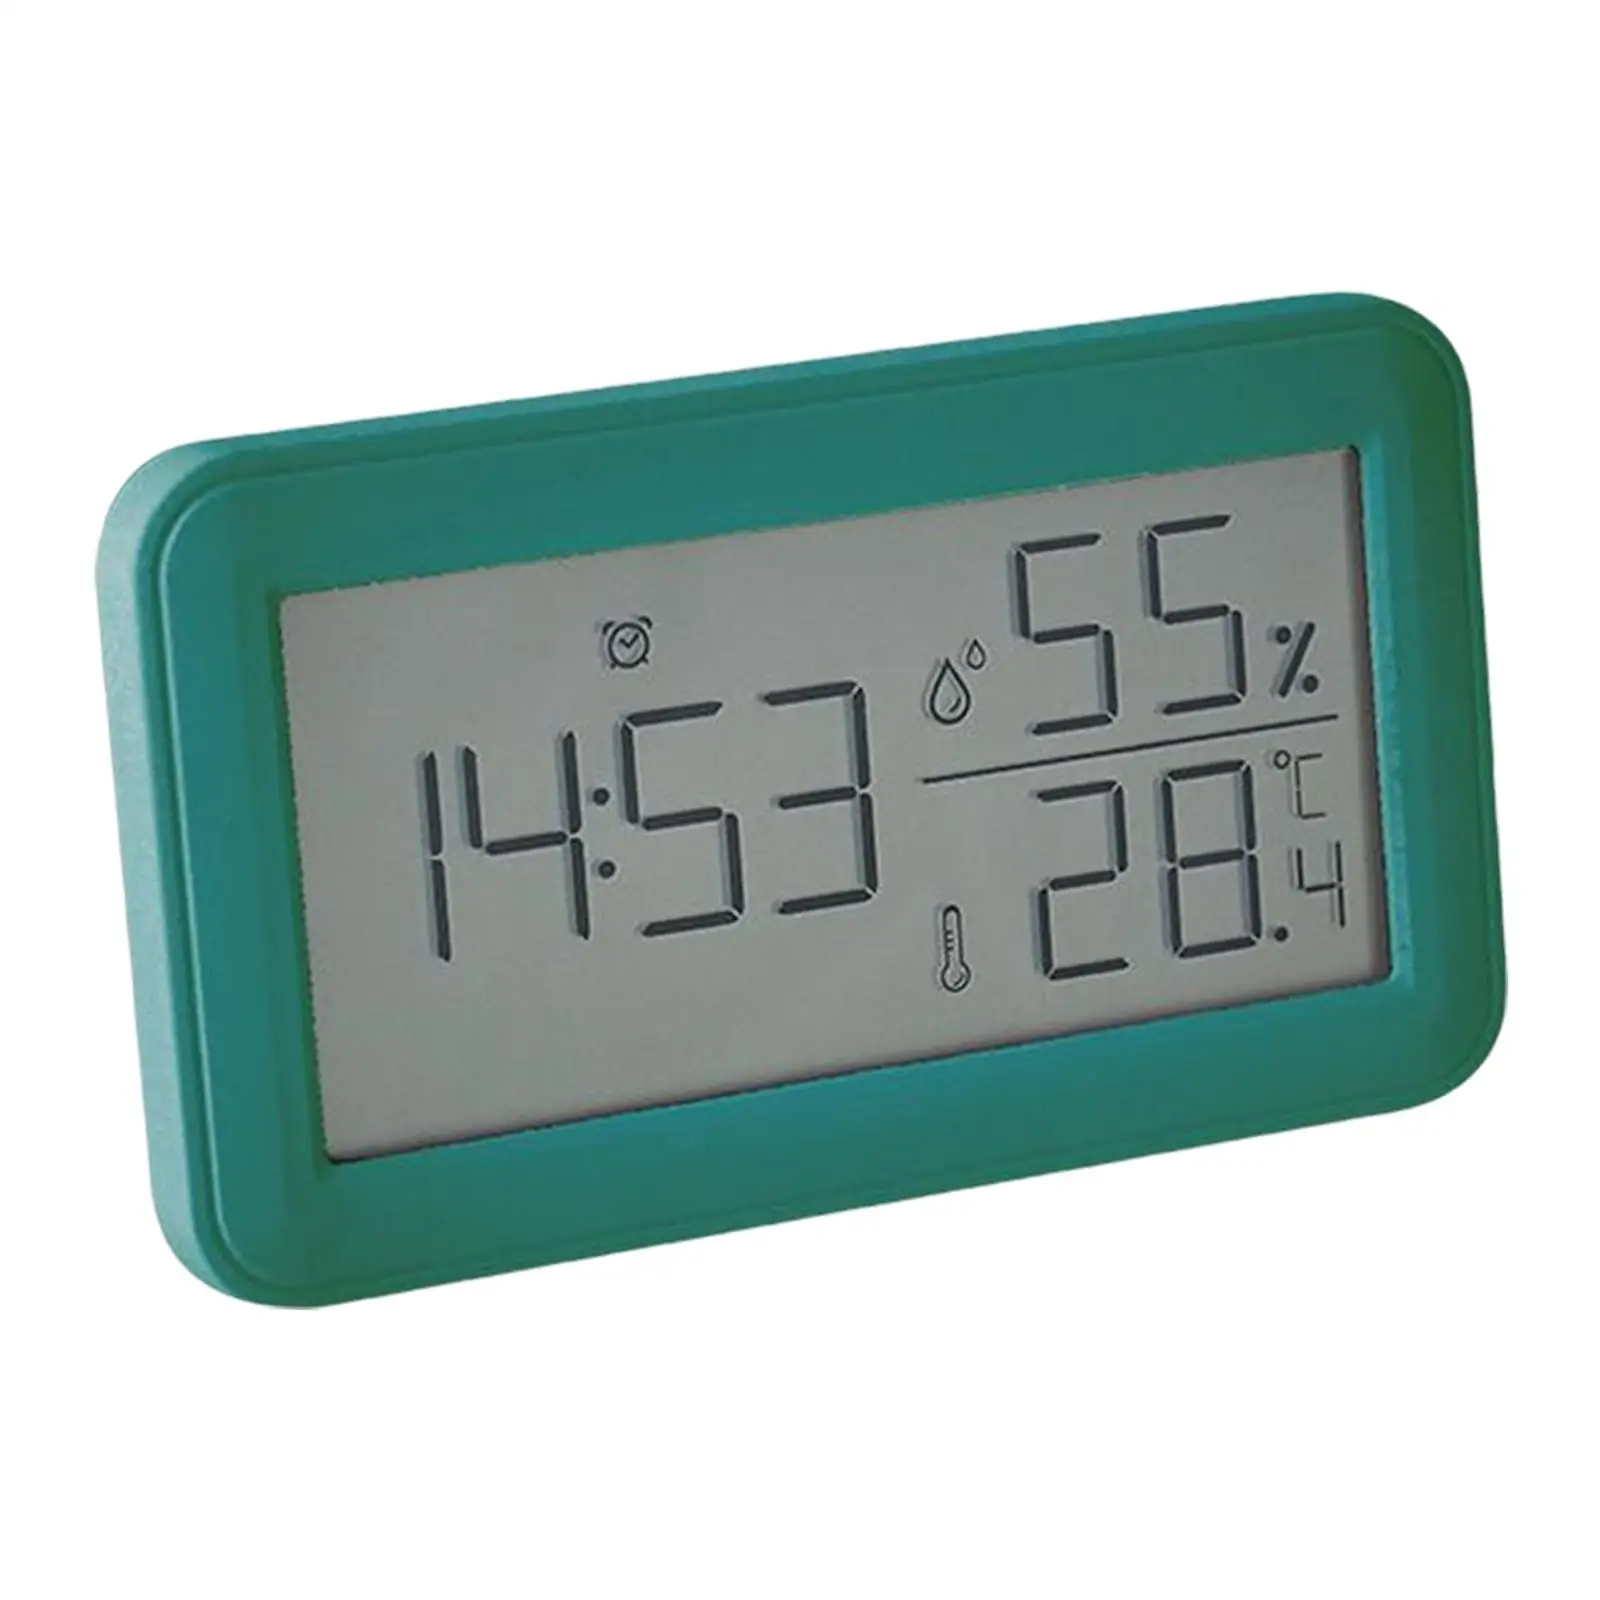 Digital Alarm Clock Temperature Hygrometer Meter LCD Screen Desk Clocks